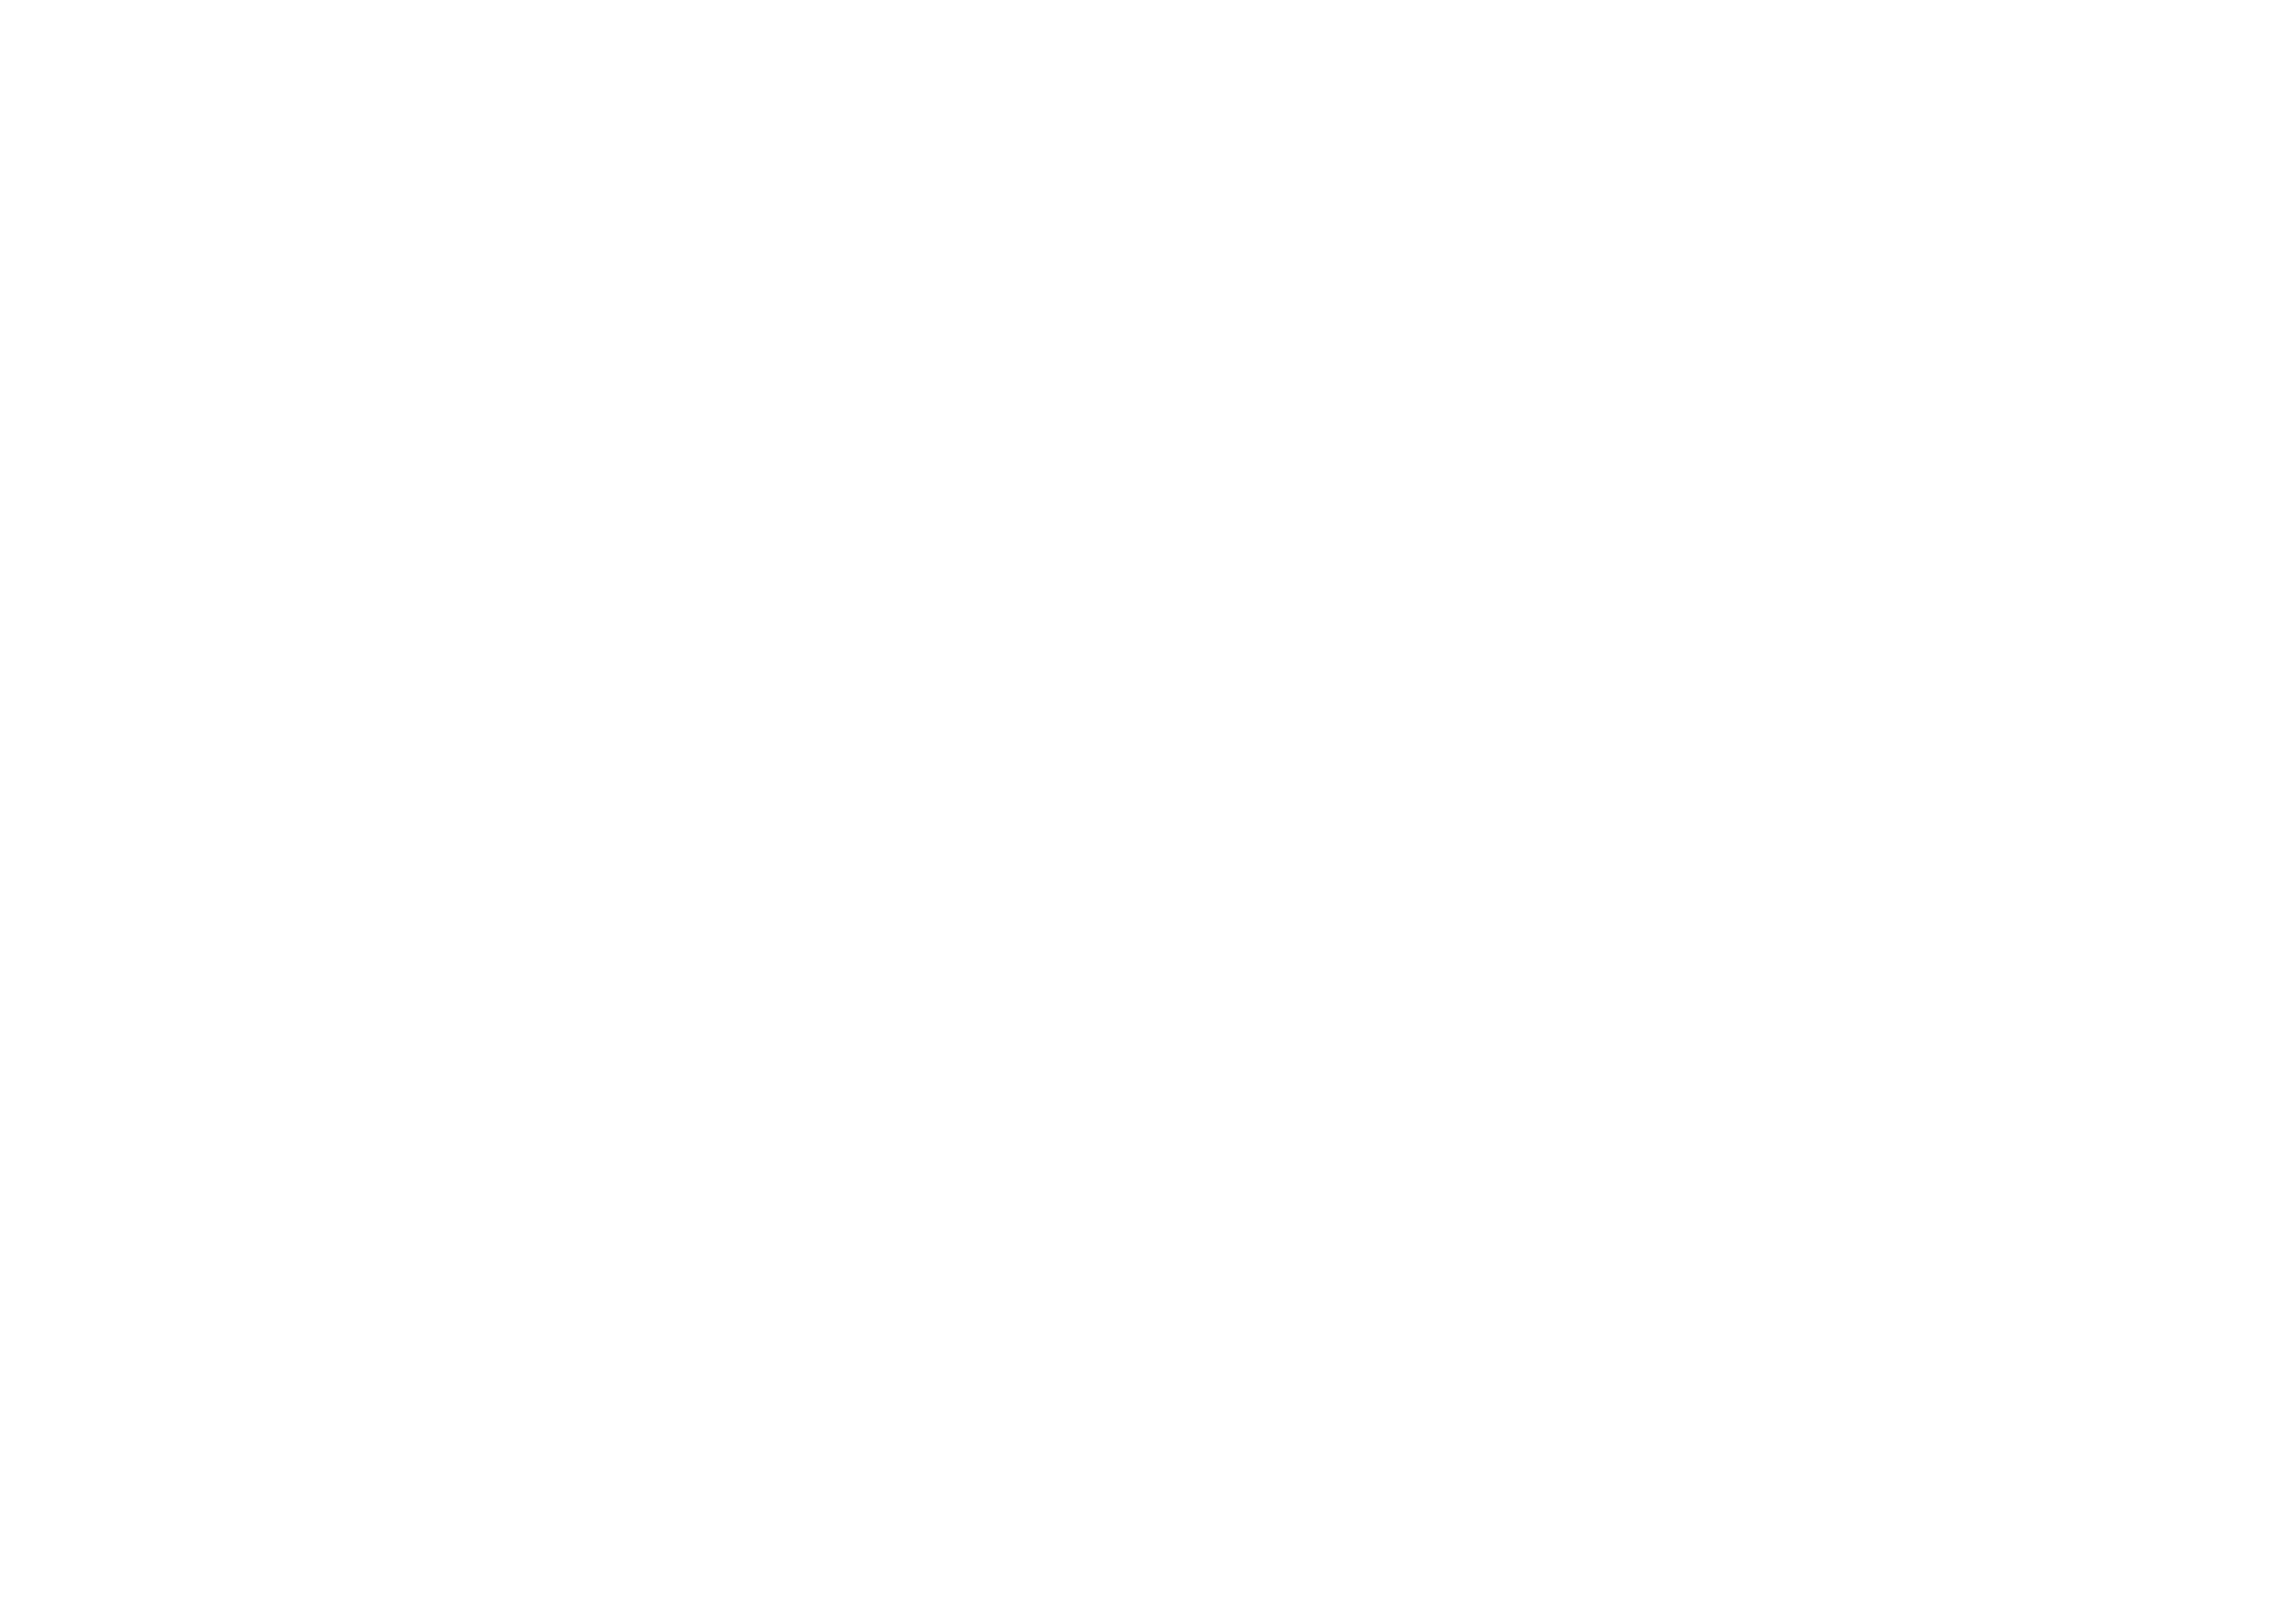 BW CFO World